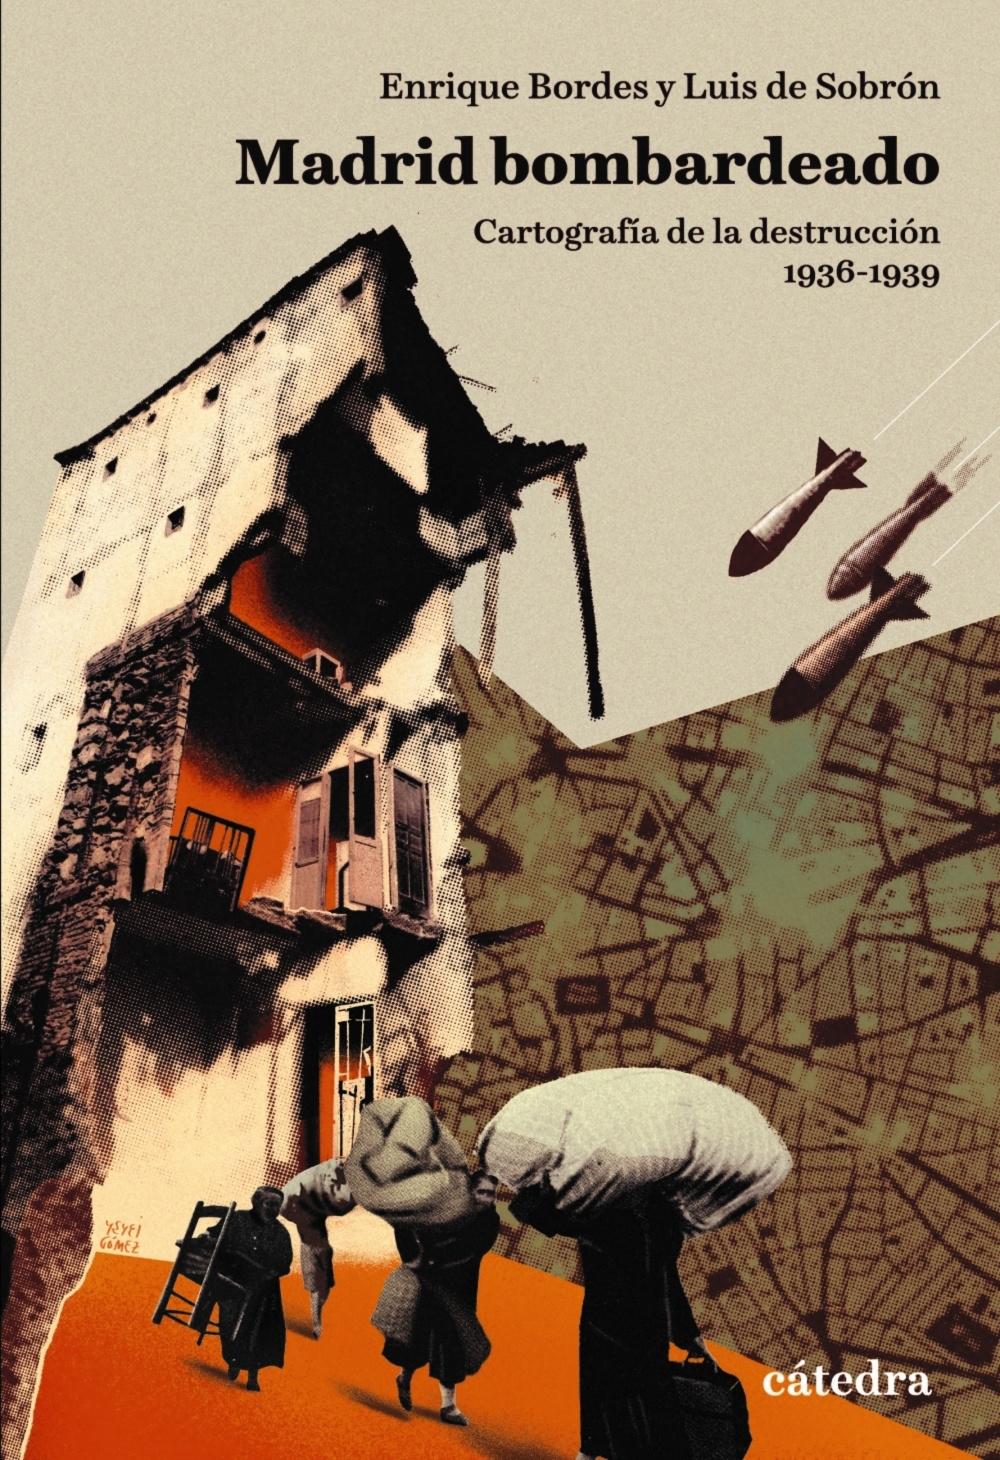 Madrid bombardeado "Cartografía de la destrucción, 1936-1939"